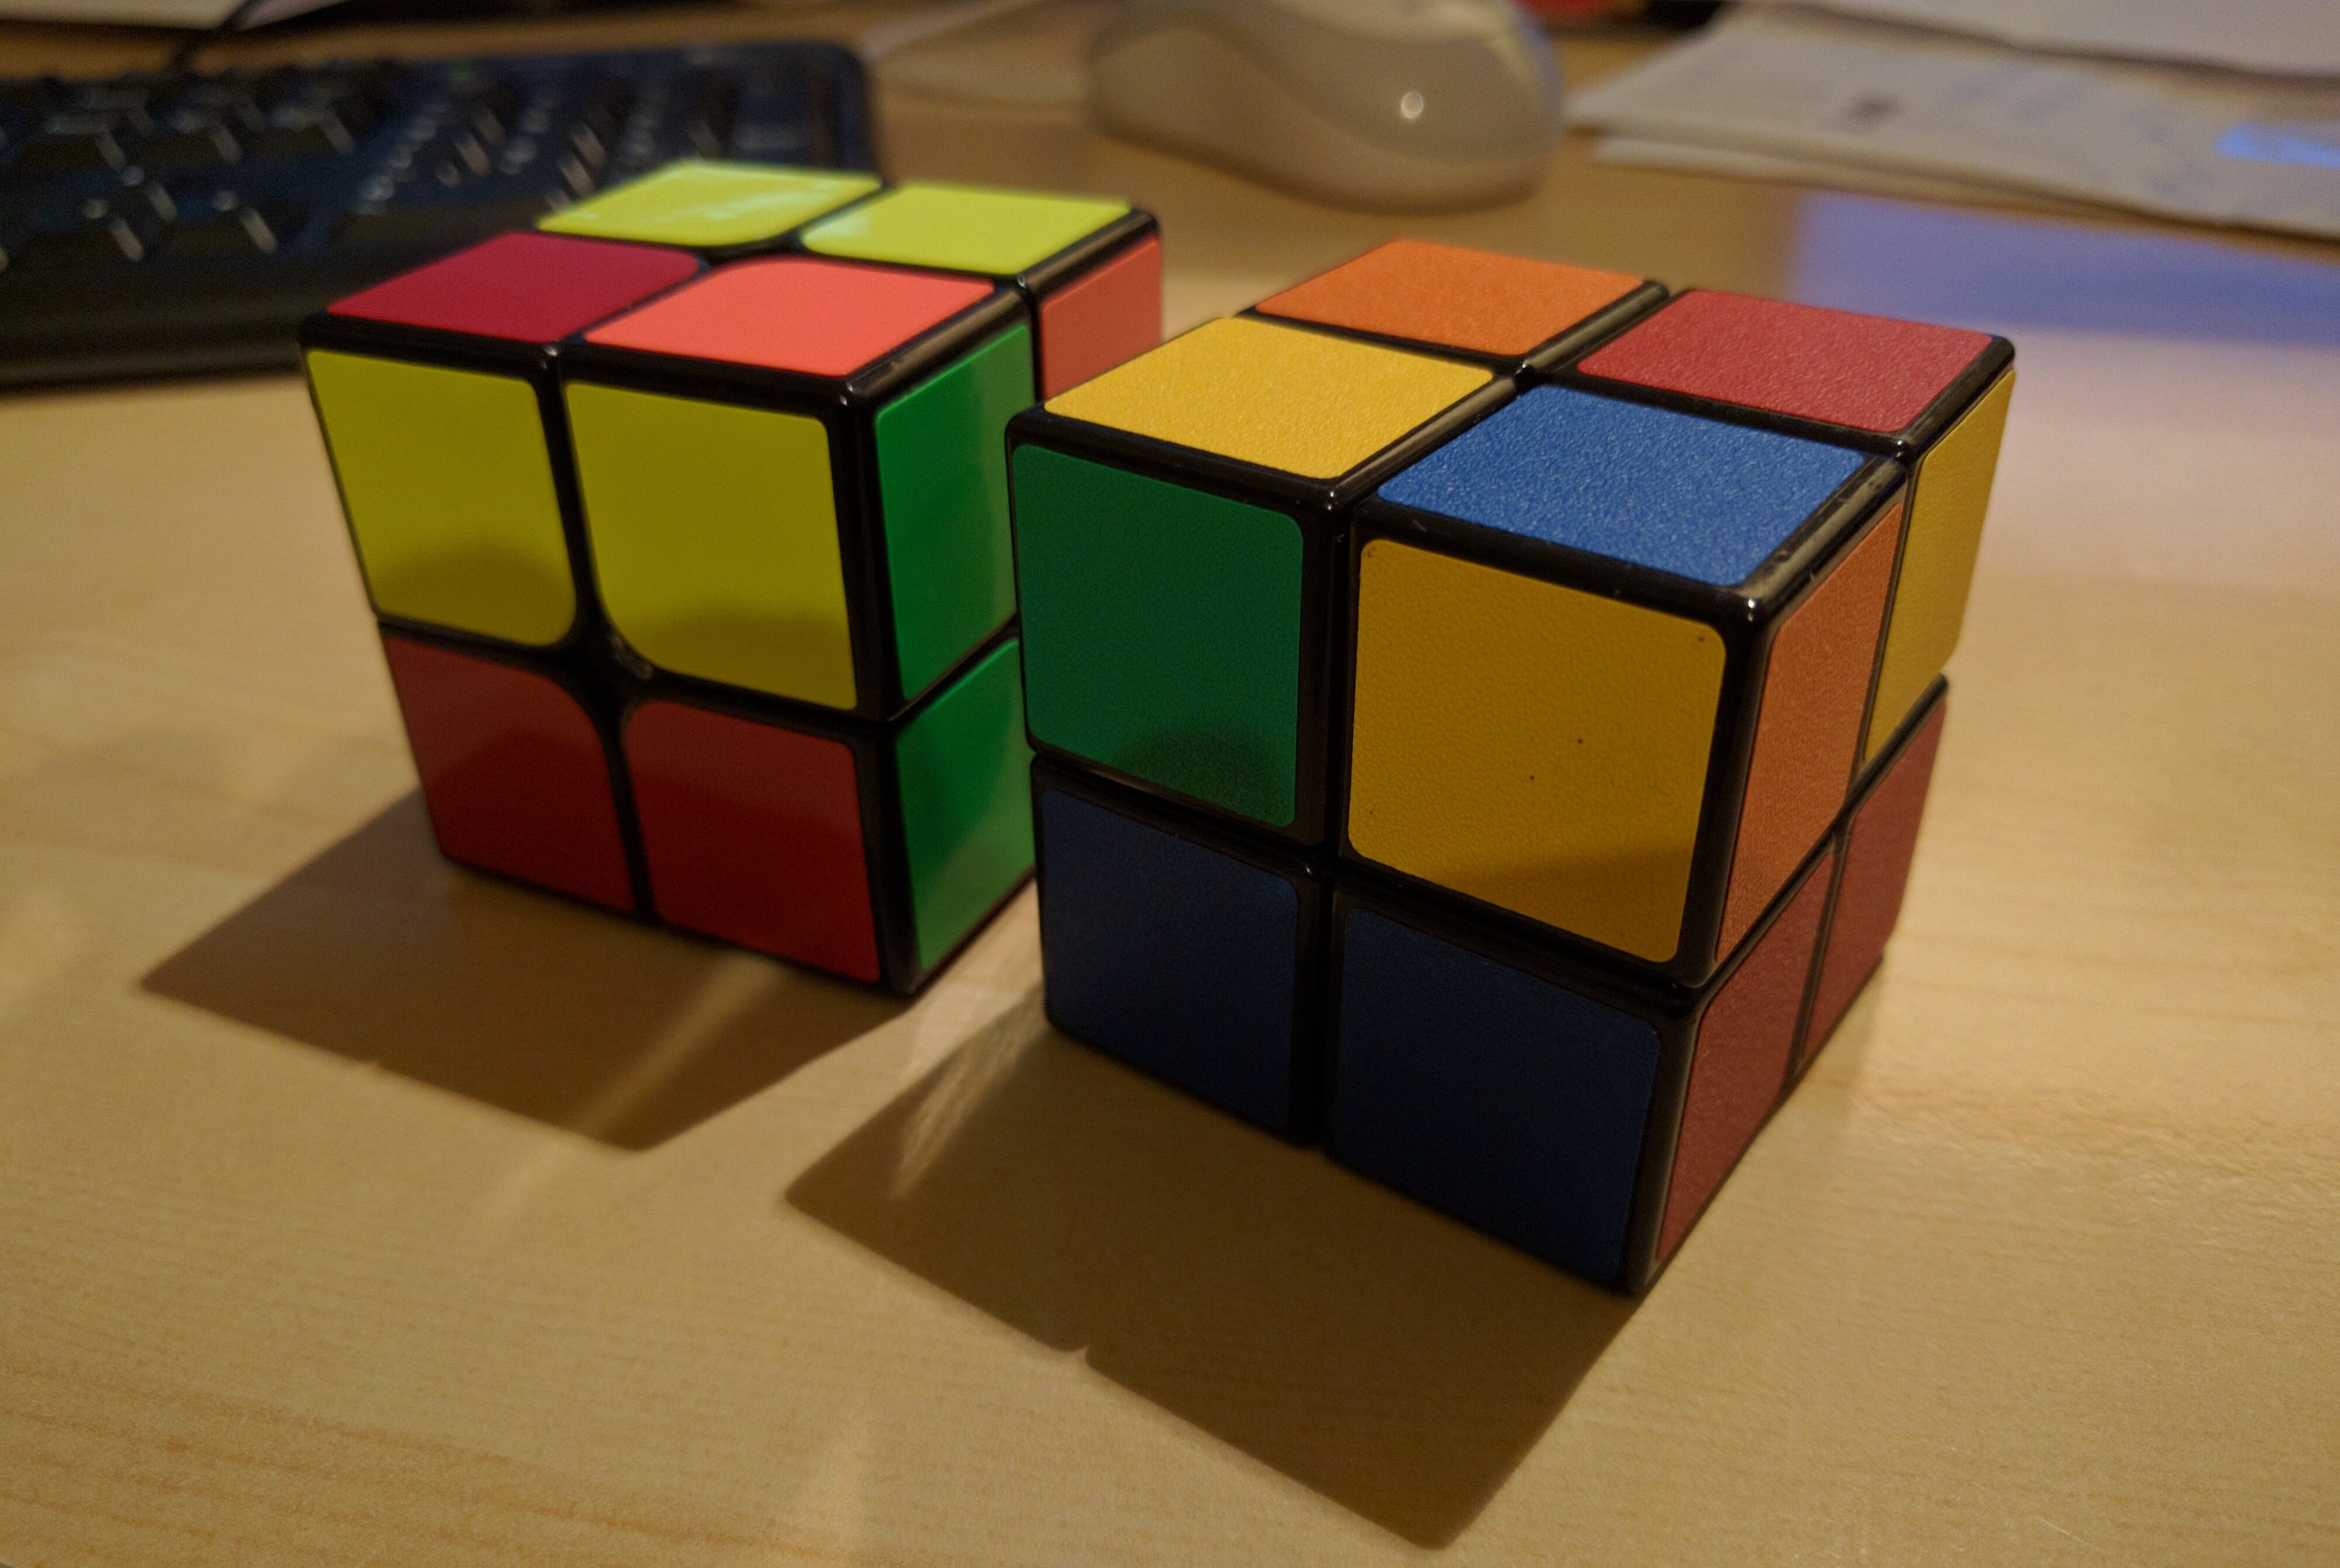 rubiks-cube-2x2x2-orient-last-layer.jpg